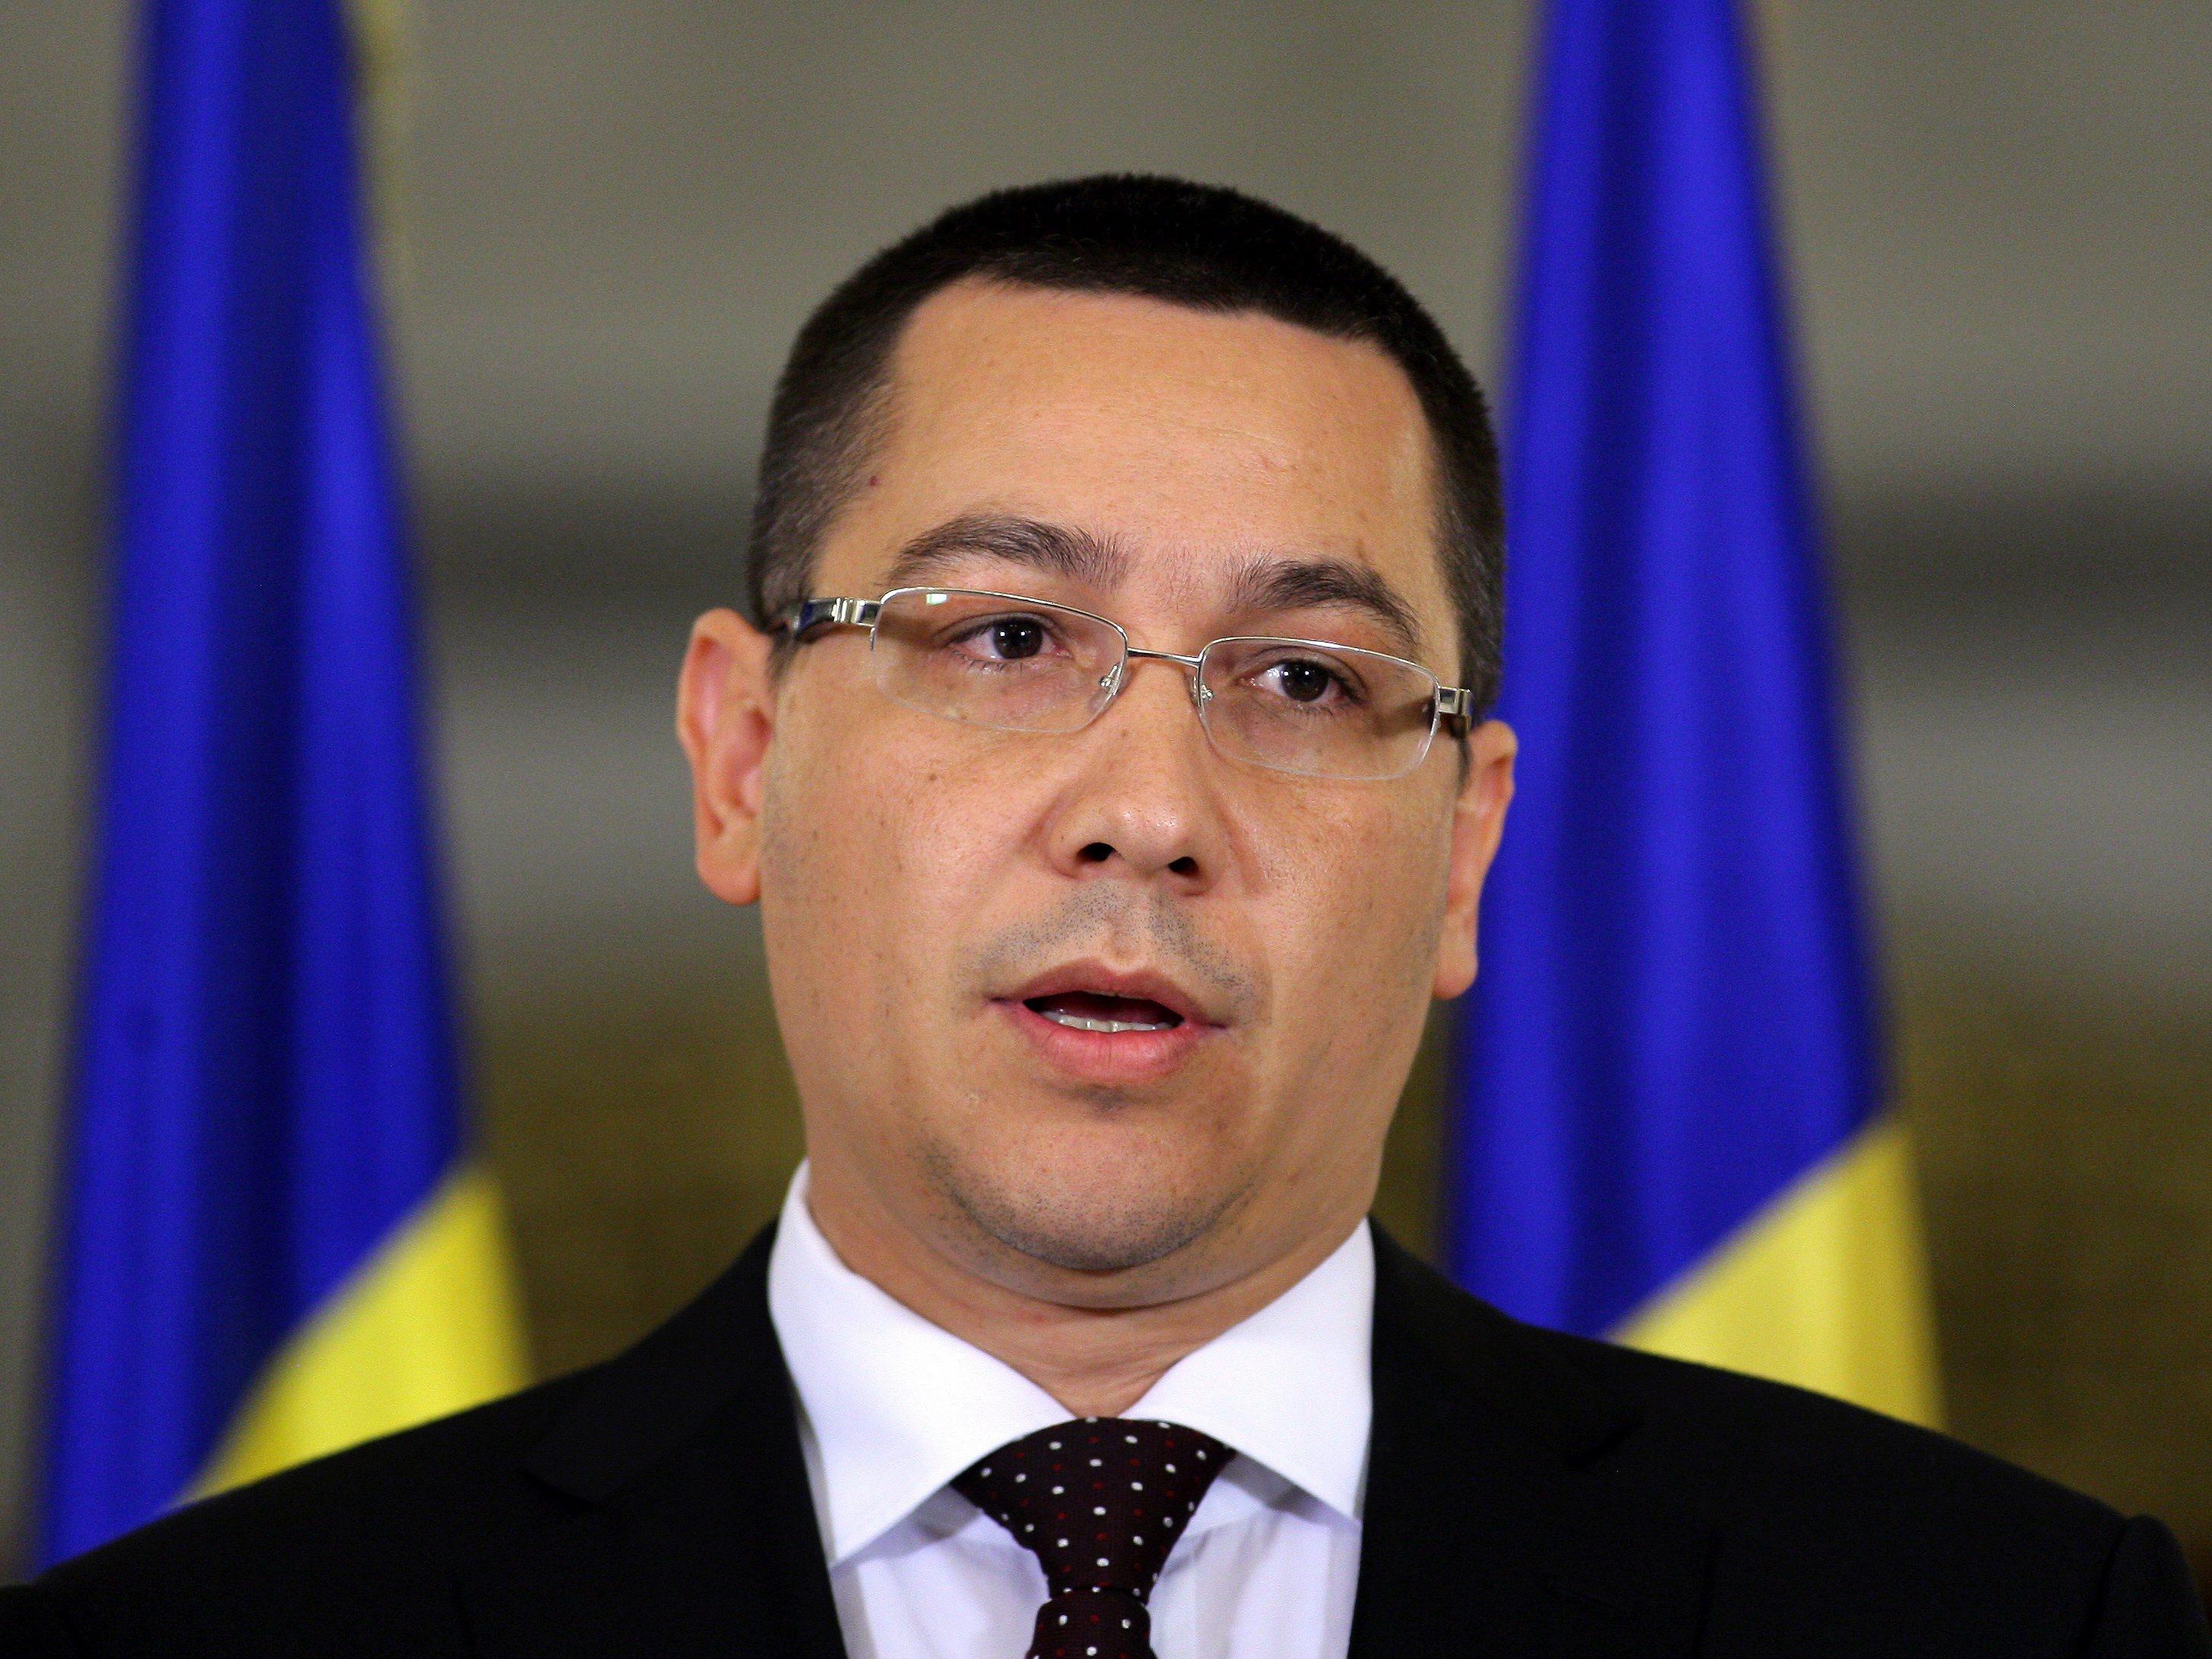 Schimbari in Guvernul Ponta 2. Vezi AICI lista completa a ministrilor, trimisa in Parlament